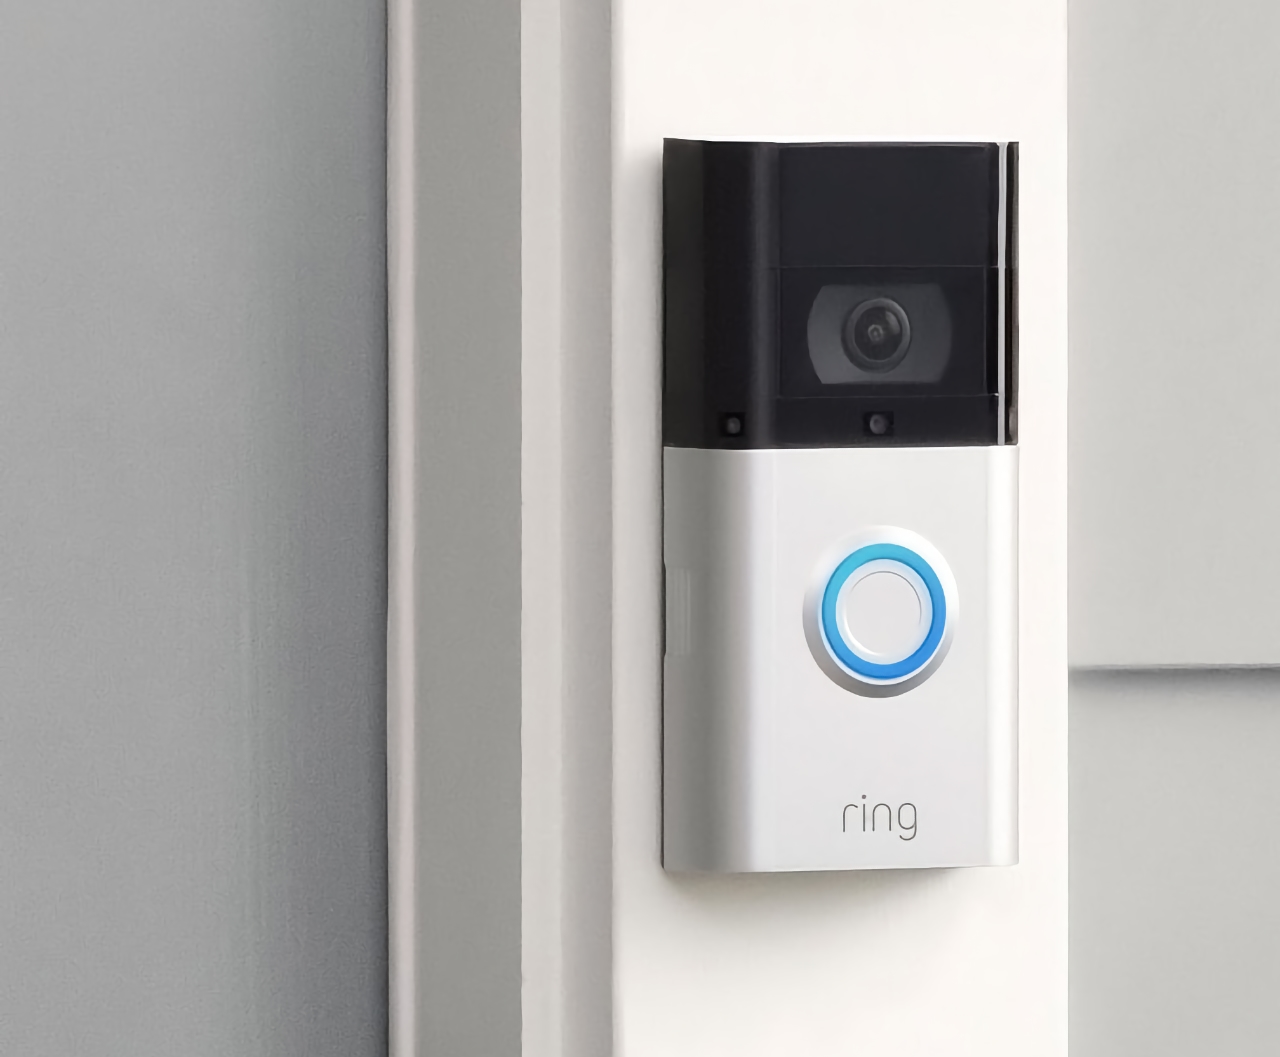 Smart Ring Video Doorbell 3 con videocamera FHD, angolo di copertura di 160 gradi e supporto Alexa è in vendita su Amazon con uno sconto di 40 dollari